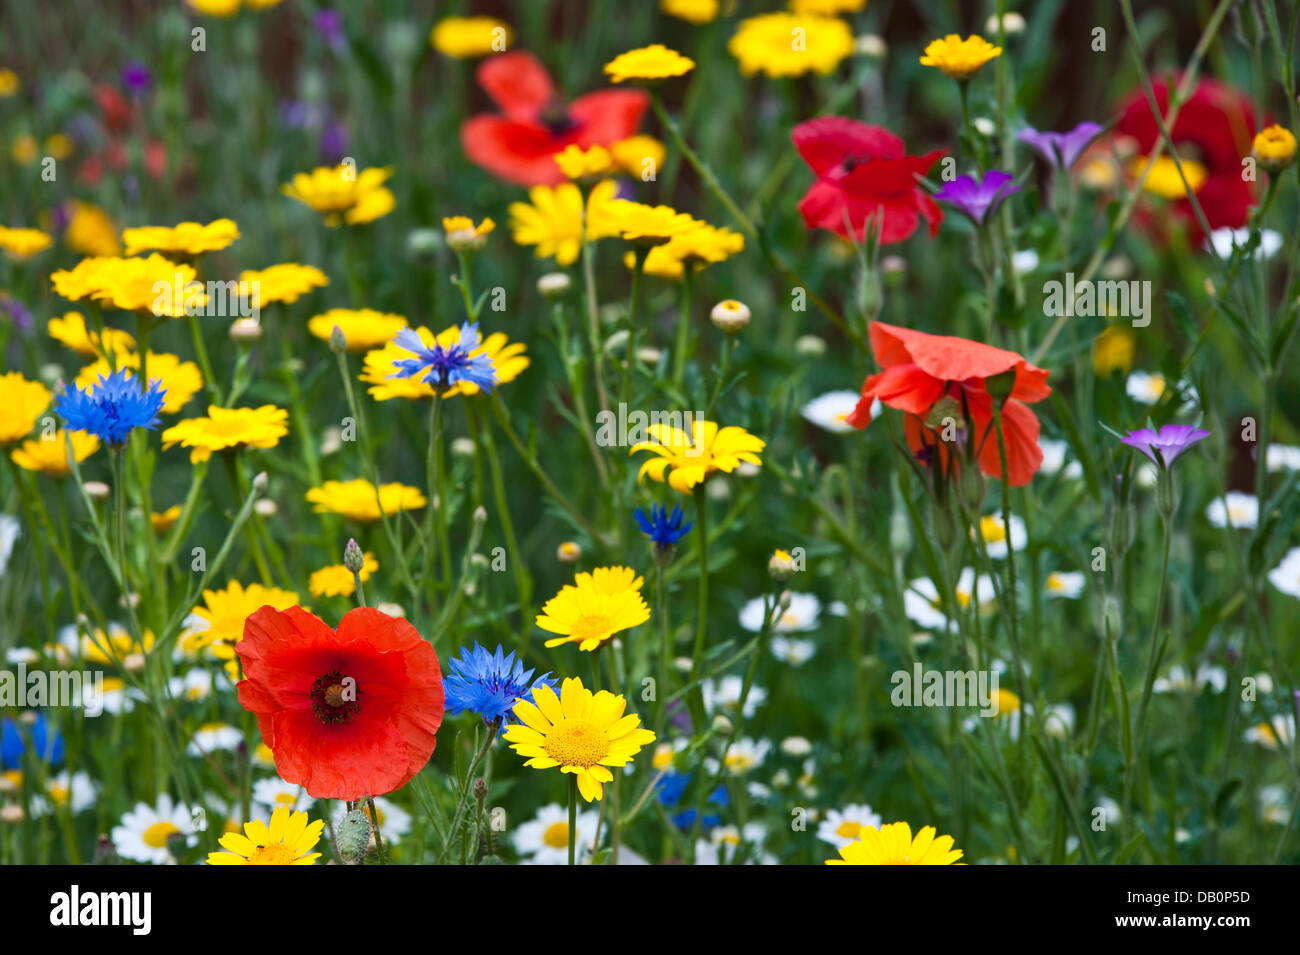 Nahaufnahme von wilden Blumen - Mohn, Ochsen-Auge Gänseblümchen, Kornblumen, Mais Ringelblumen und corncockles Stockfoto